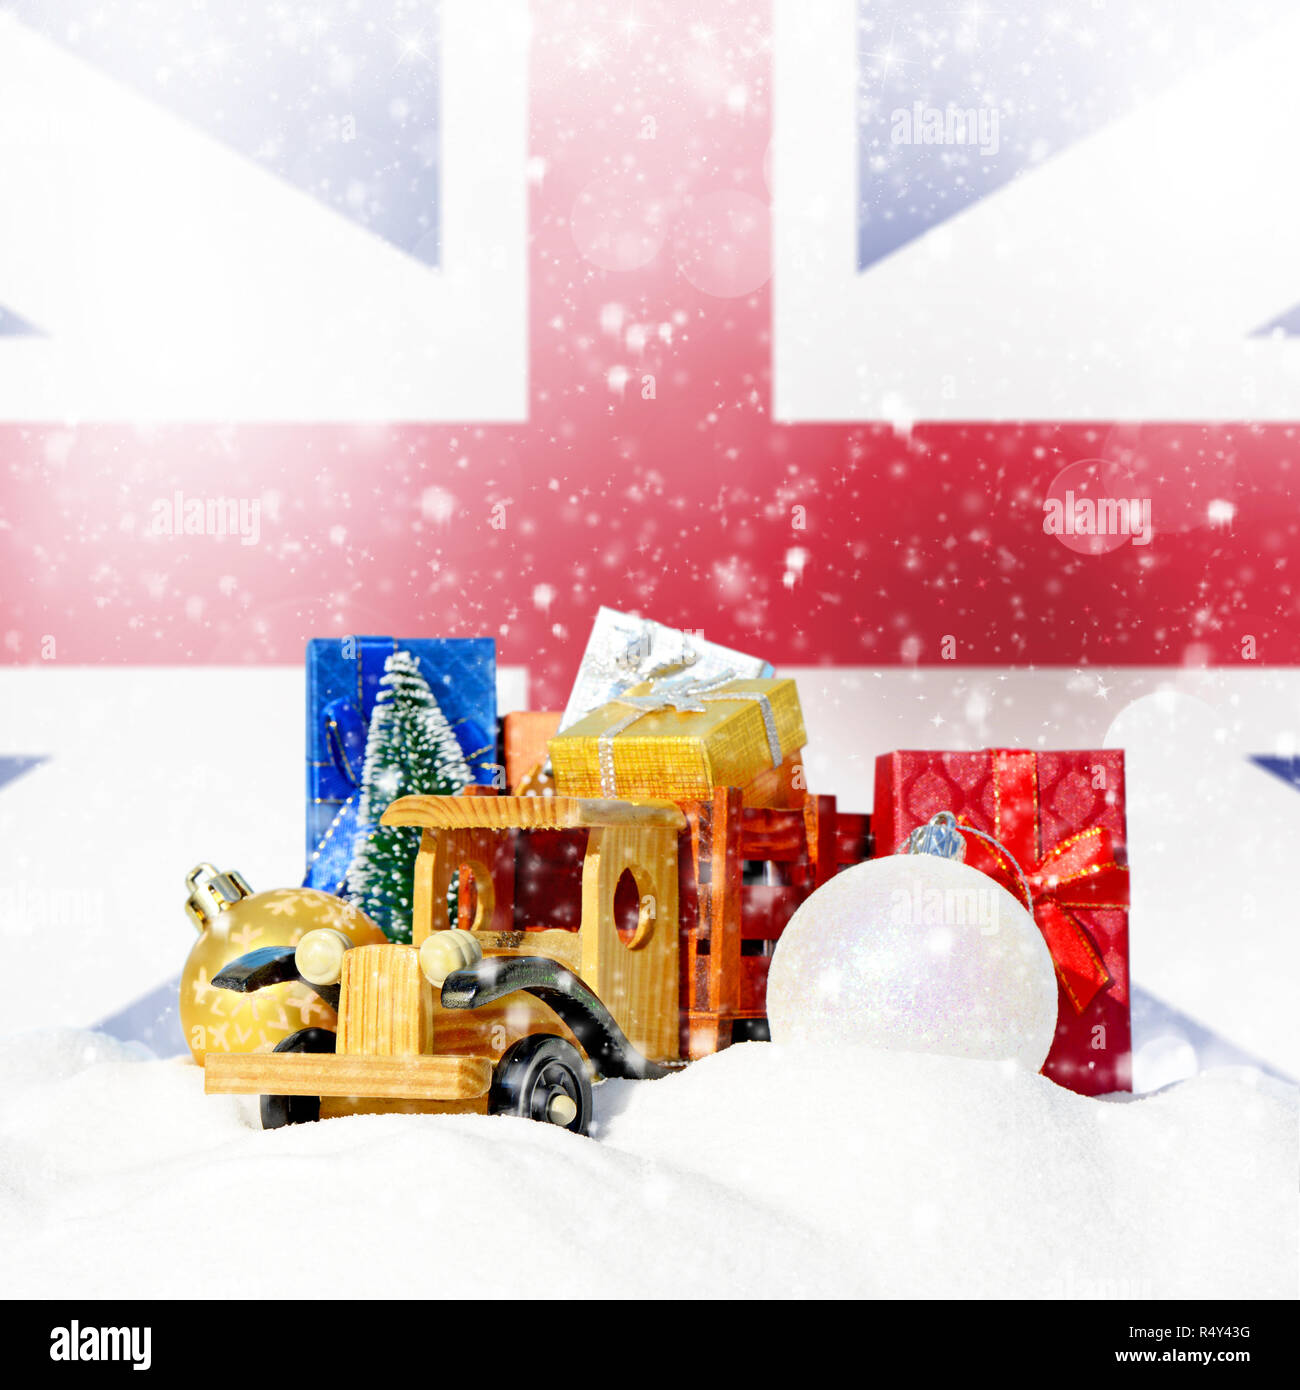 Weihnachten Hintergrund. Spielzeug-LKW mit Geschenken, Neues Jahr Tanne, Kugeln im Schneetreiben und England Flagge Stockfoto